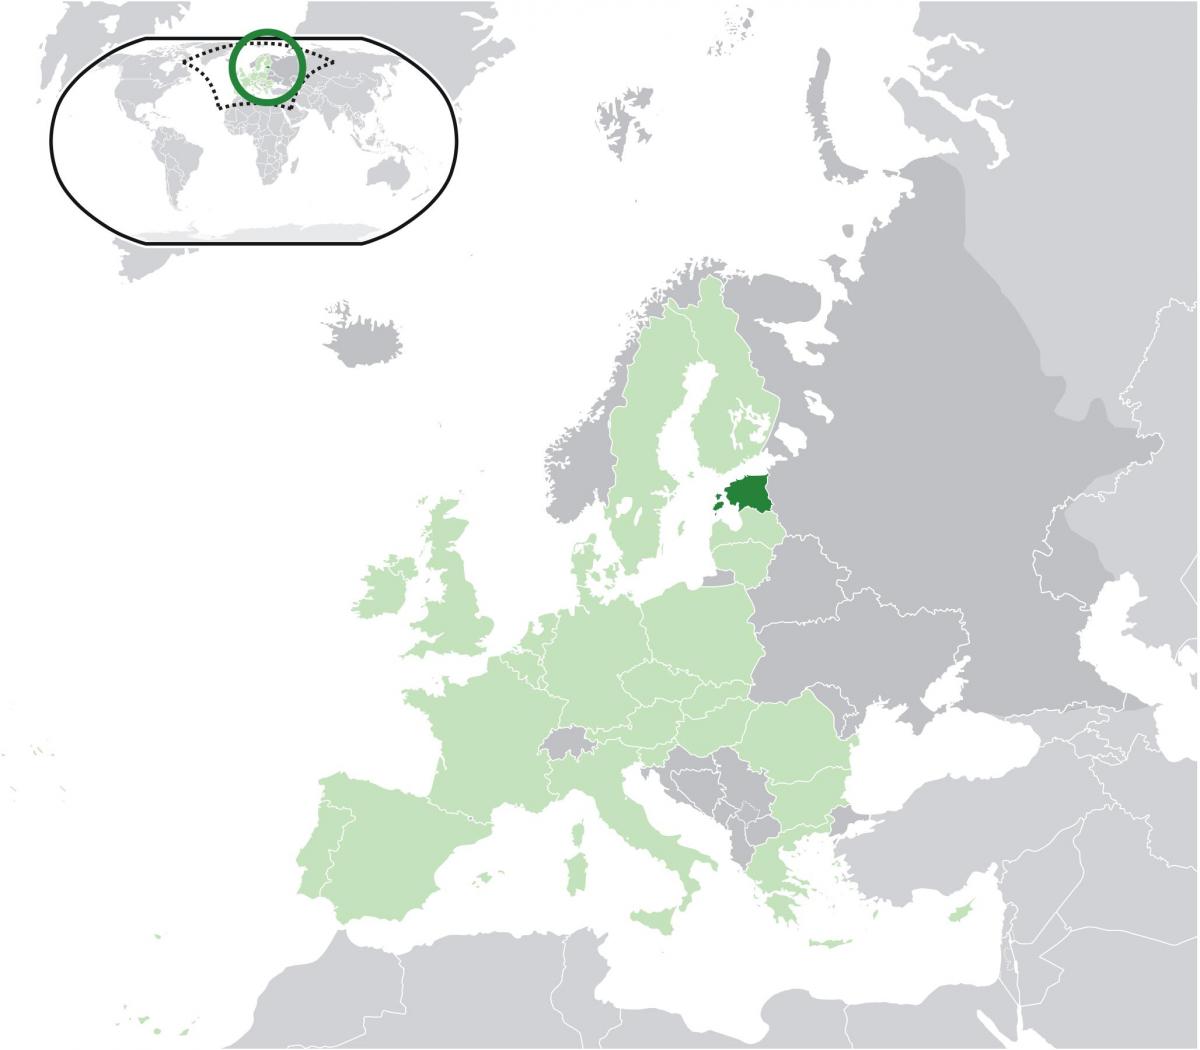 Estland op die kaart van europa